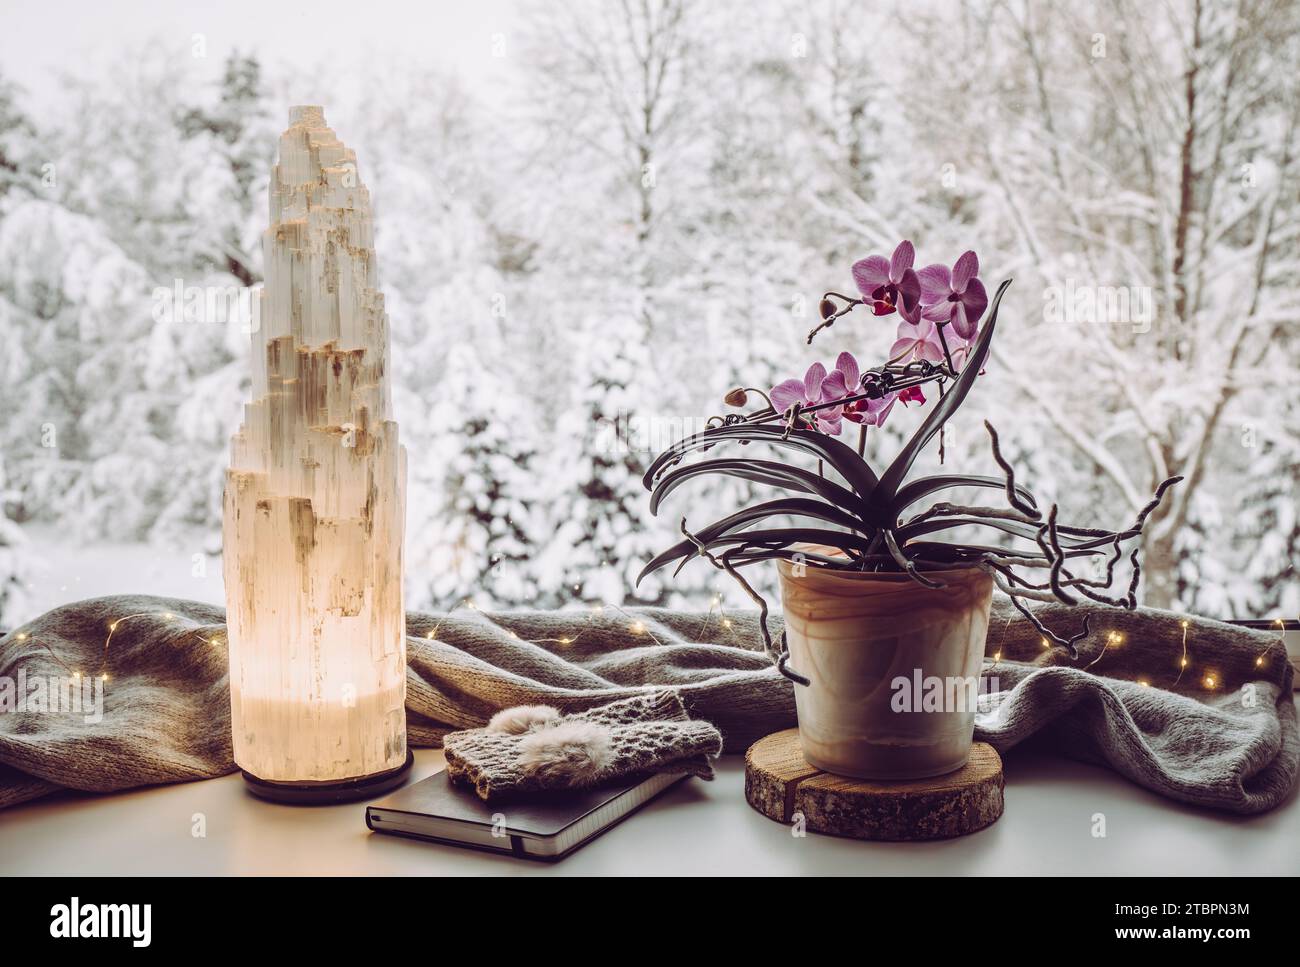 Ensemble de maison d'hiver confortable avec lampe de tour électrique en cristal de sélénite naturel illuminé sur le rebord de la fenêtre, écharpe de couleur grise et gants, orchidée de carnet de notes en papier. Banque D'Images